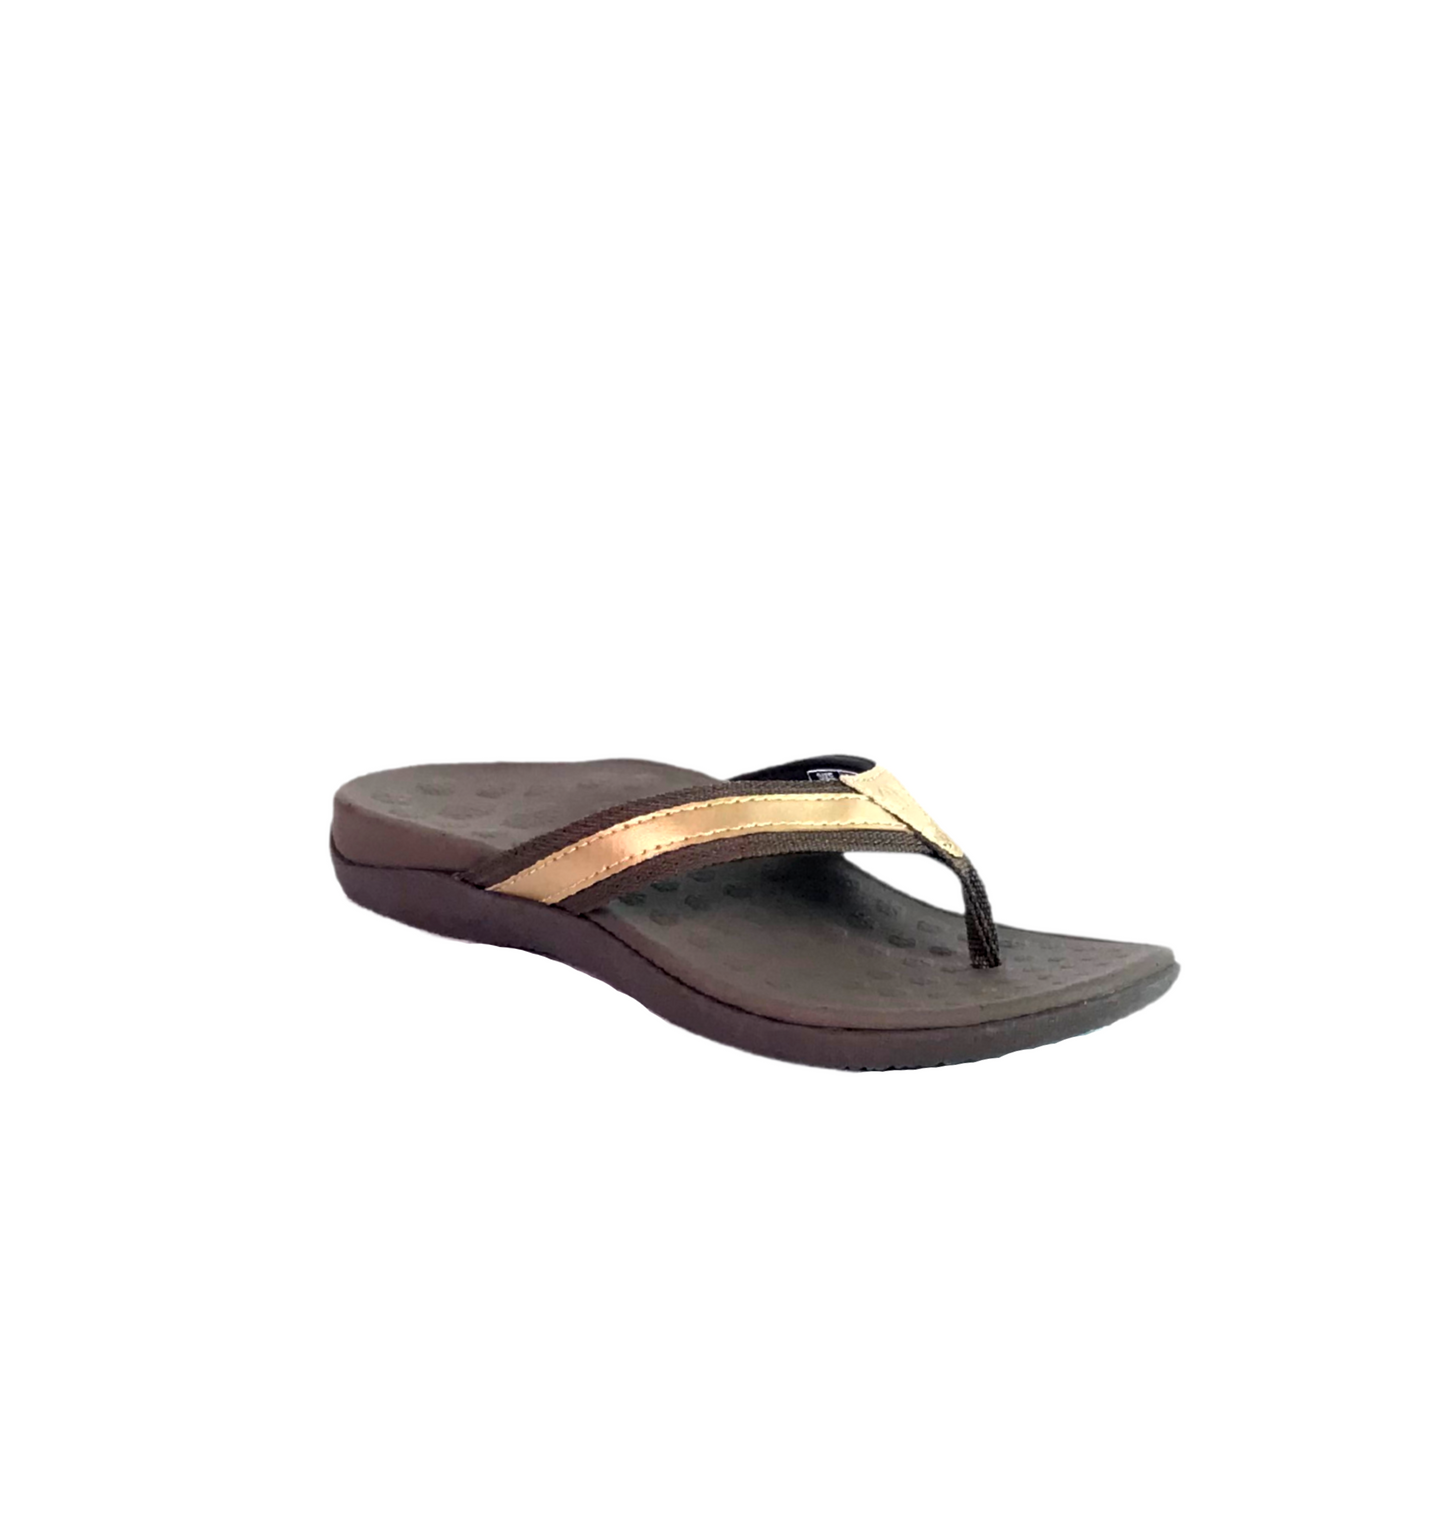 Unisex Brown Stylish Sandals